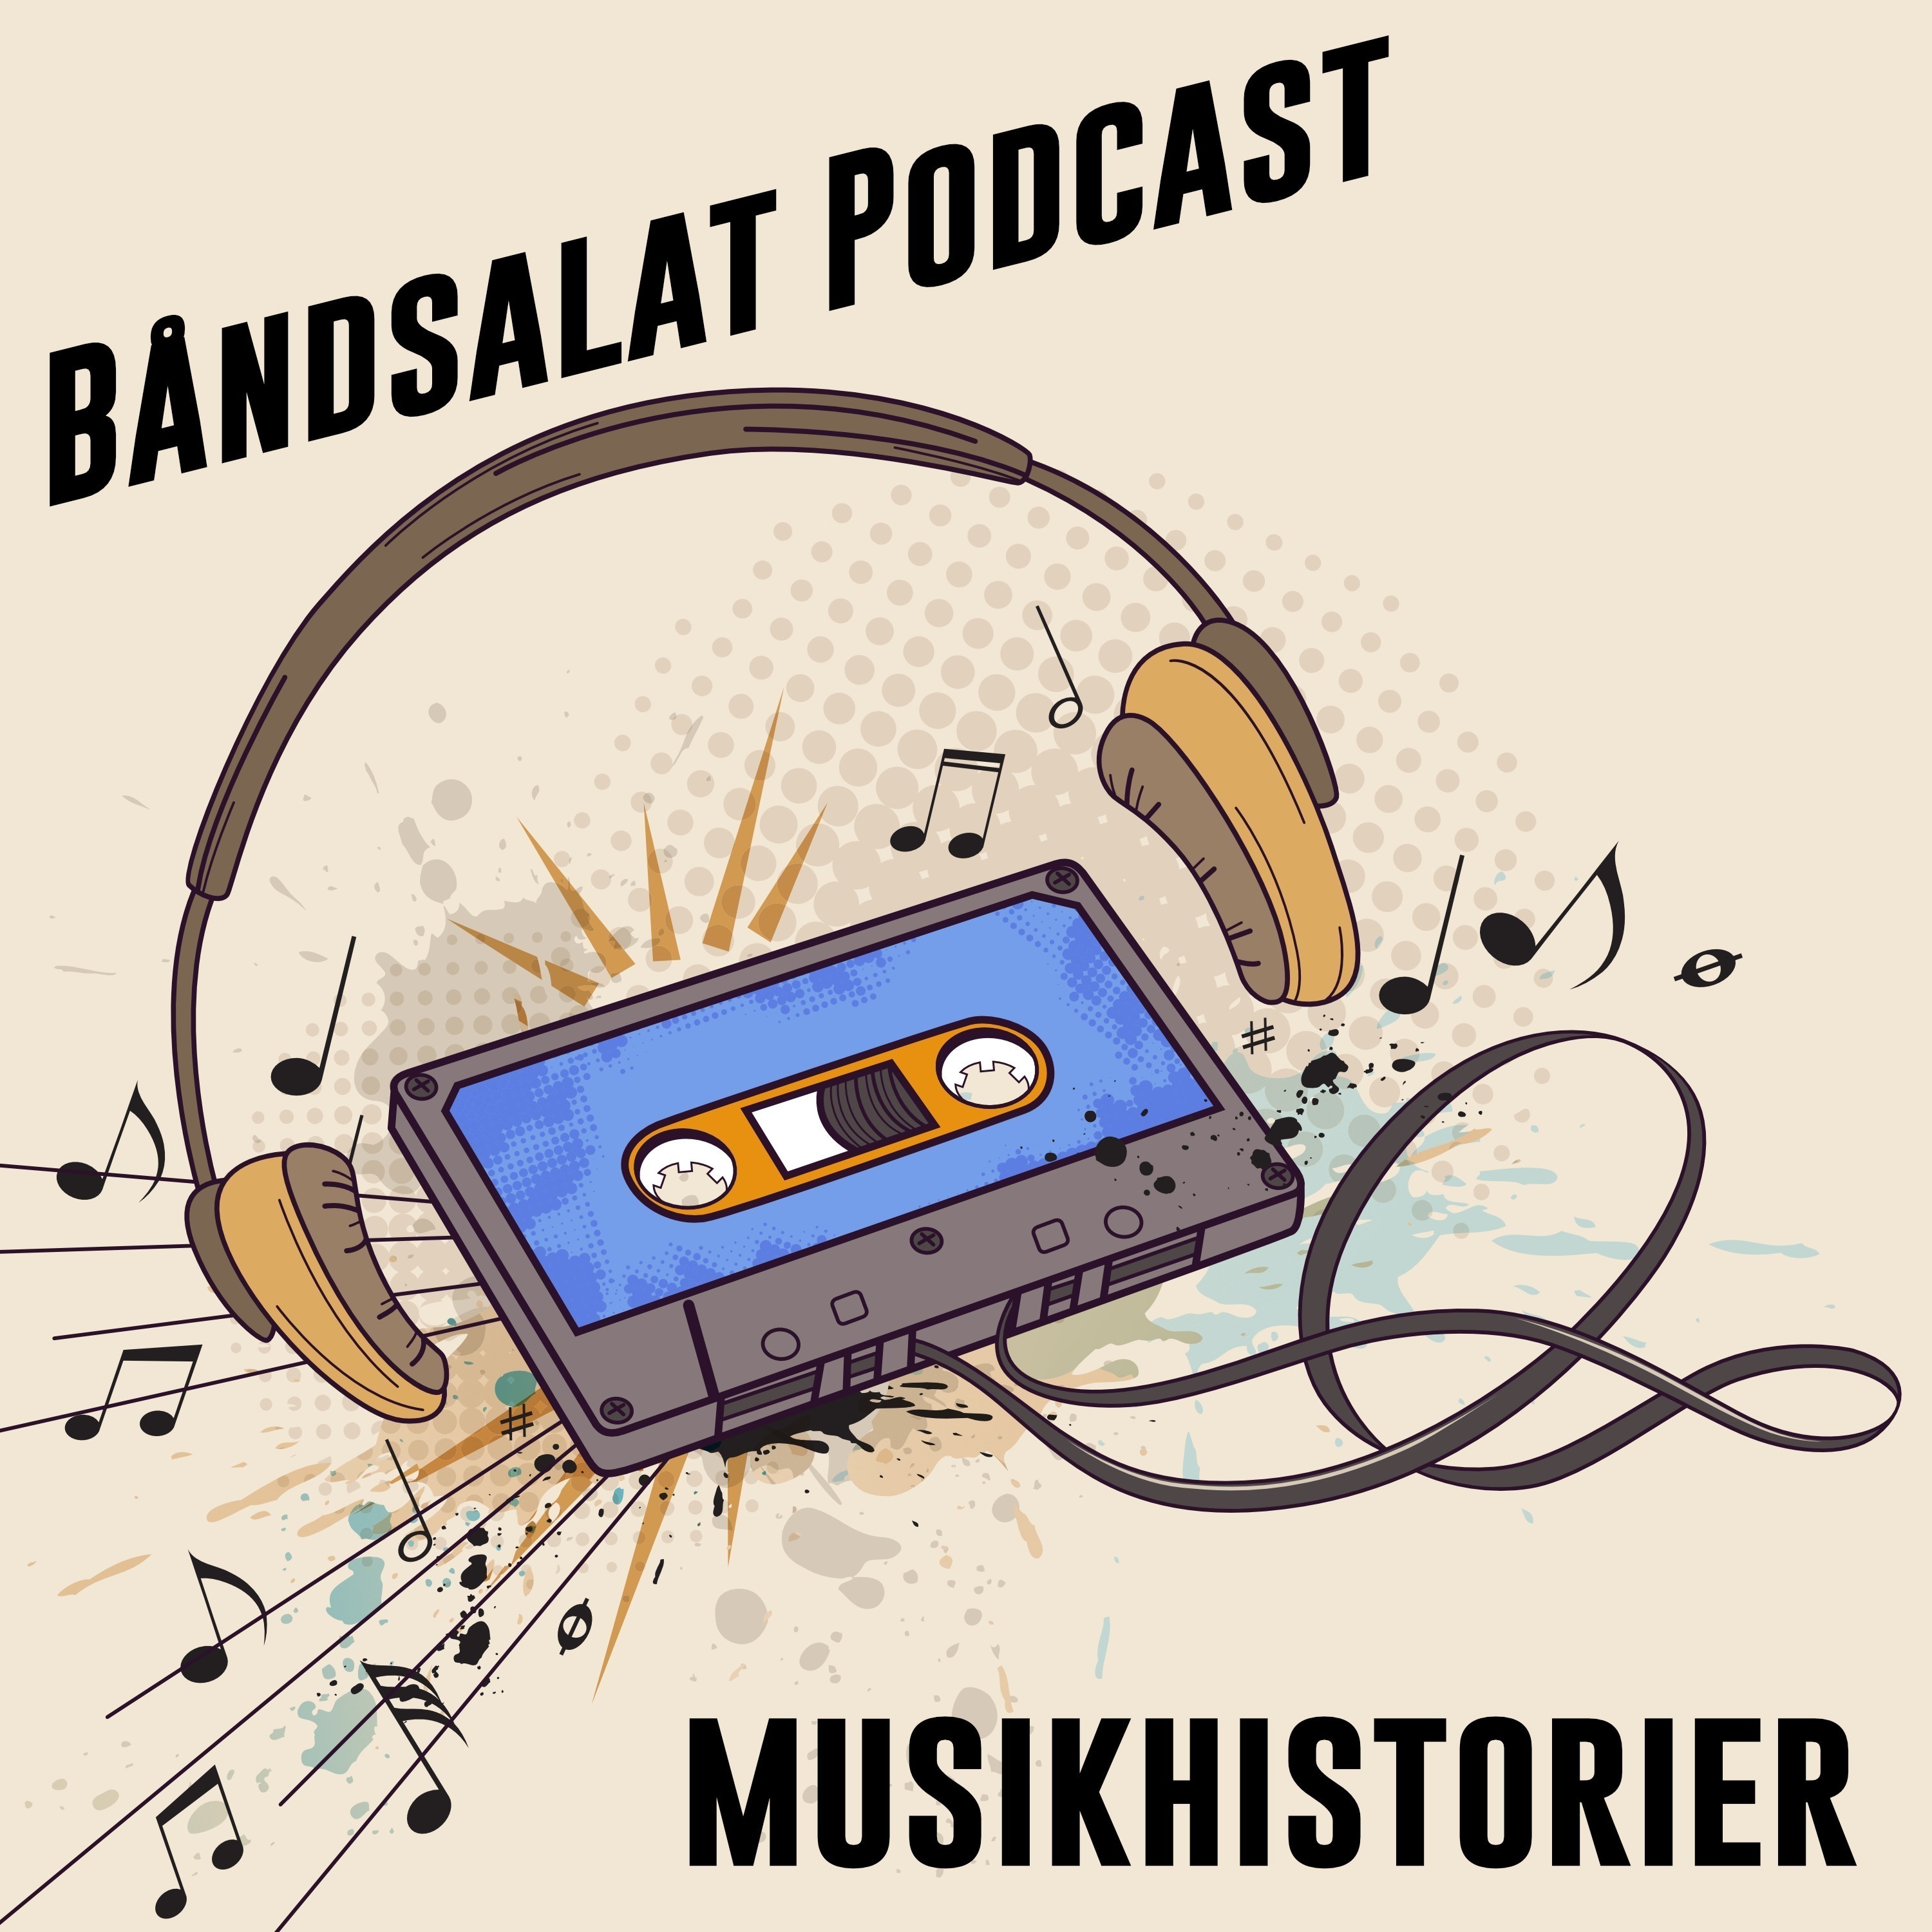 Båndsalat Podcast Musikhistorier